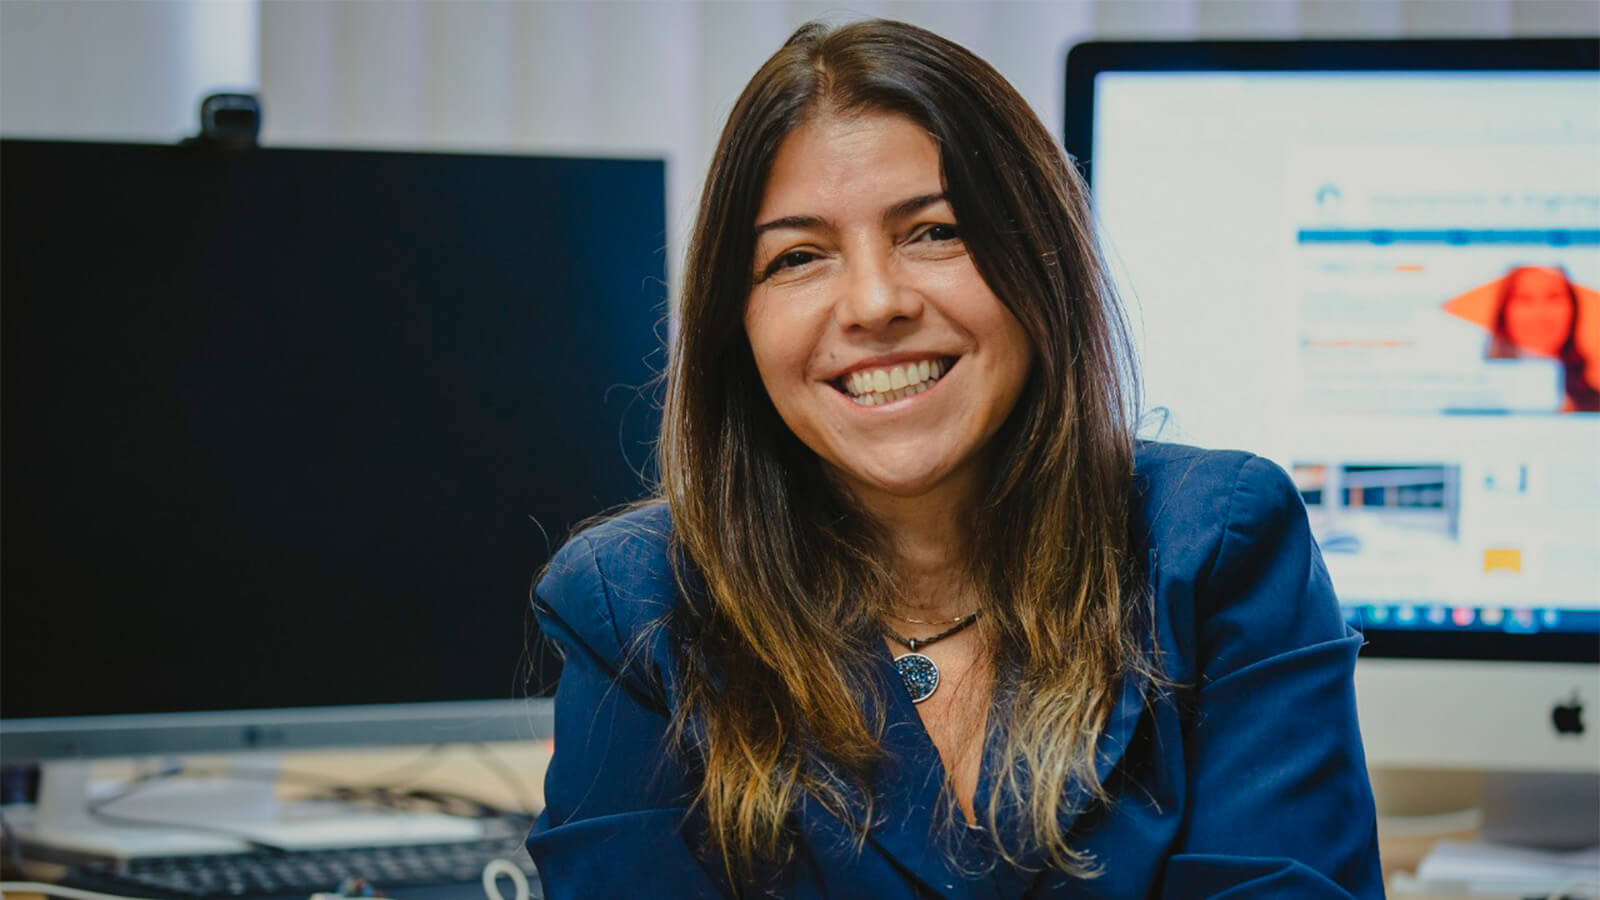 Mulheres na Engenharia: conheça a carreira da professora Marly Monteiro de Carvalho